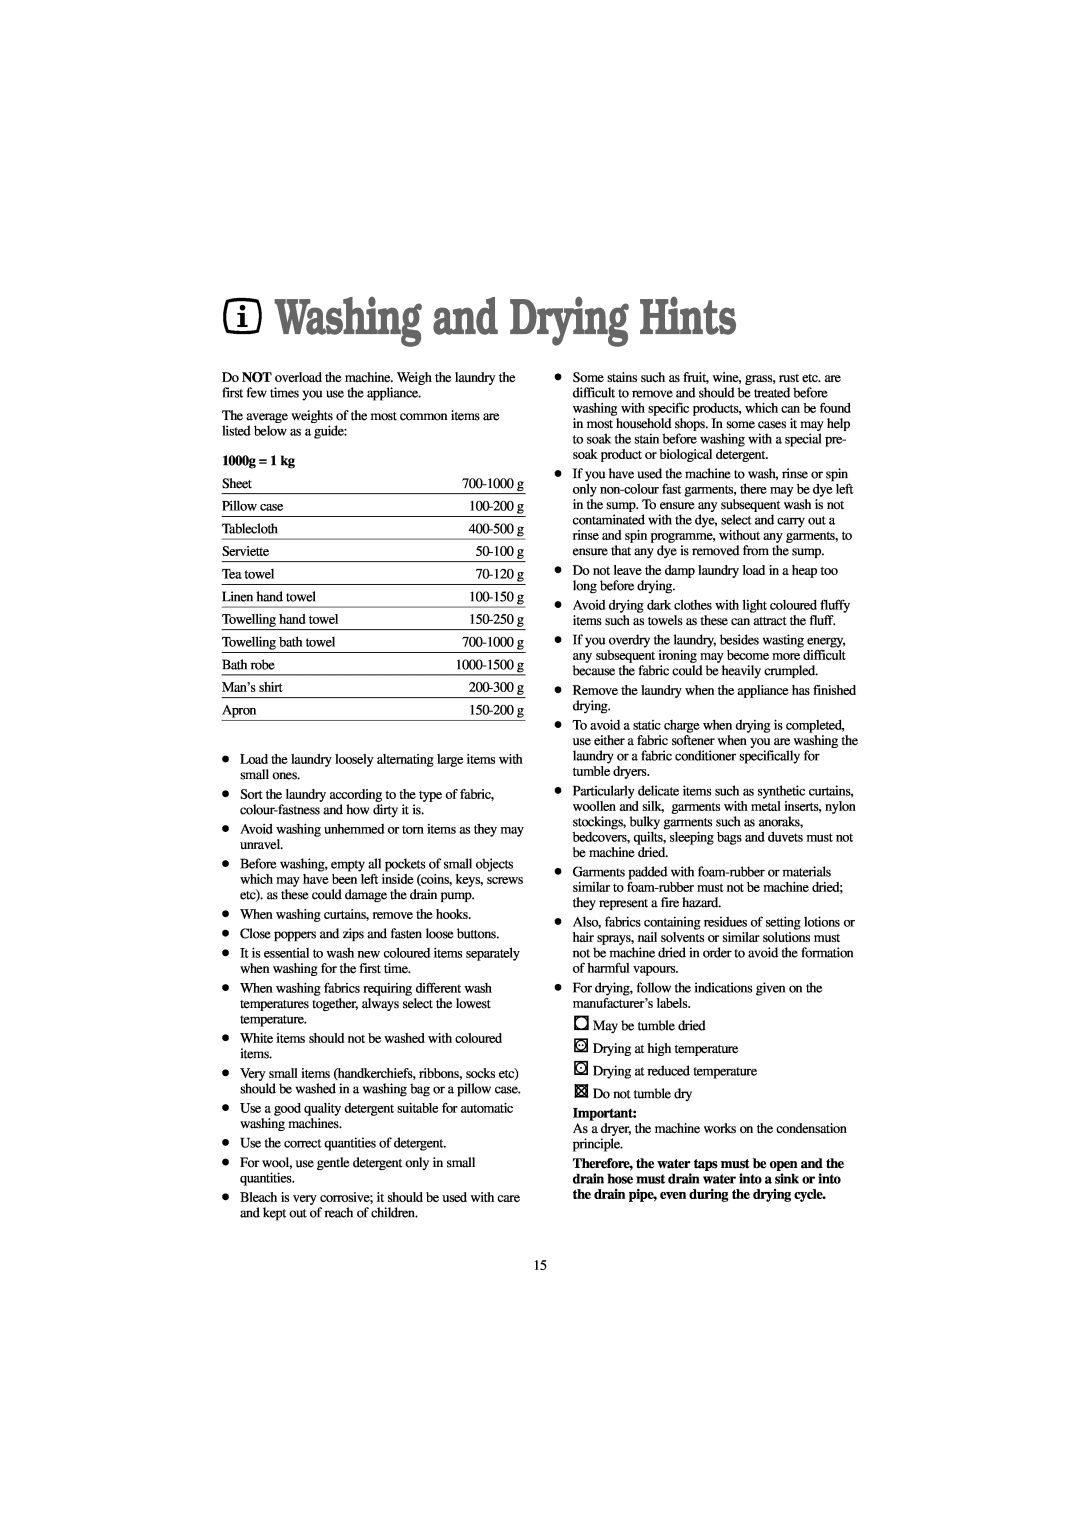 Zanussi WJD 1257 W, WJD 1457 W, WJD 1357 S, WJD 1257 S manual Washing and Drying Hints, 1000g = 1 kg 